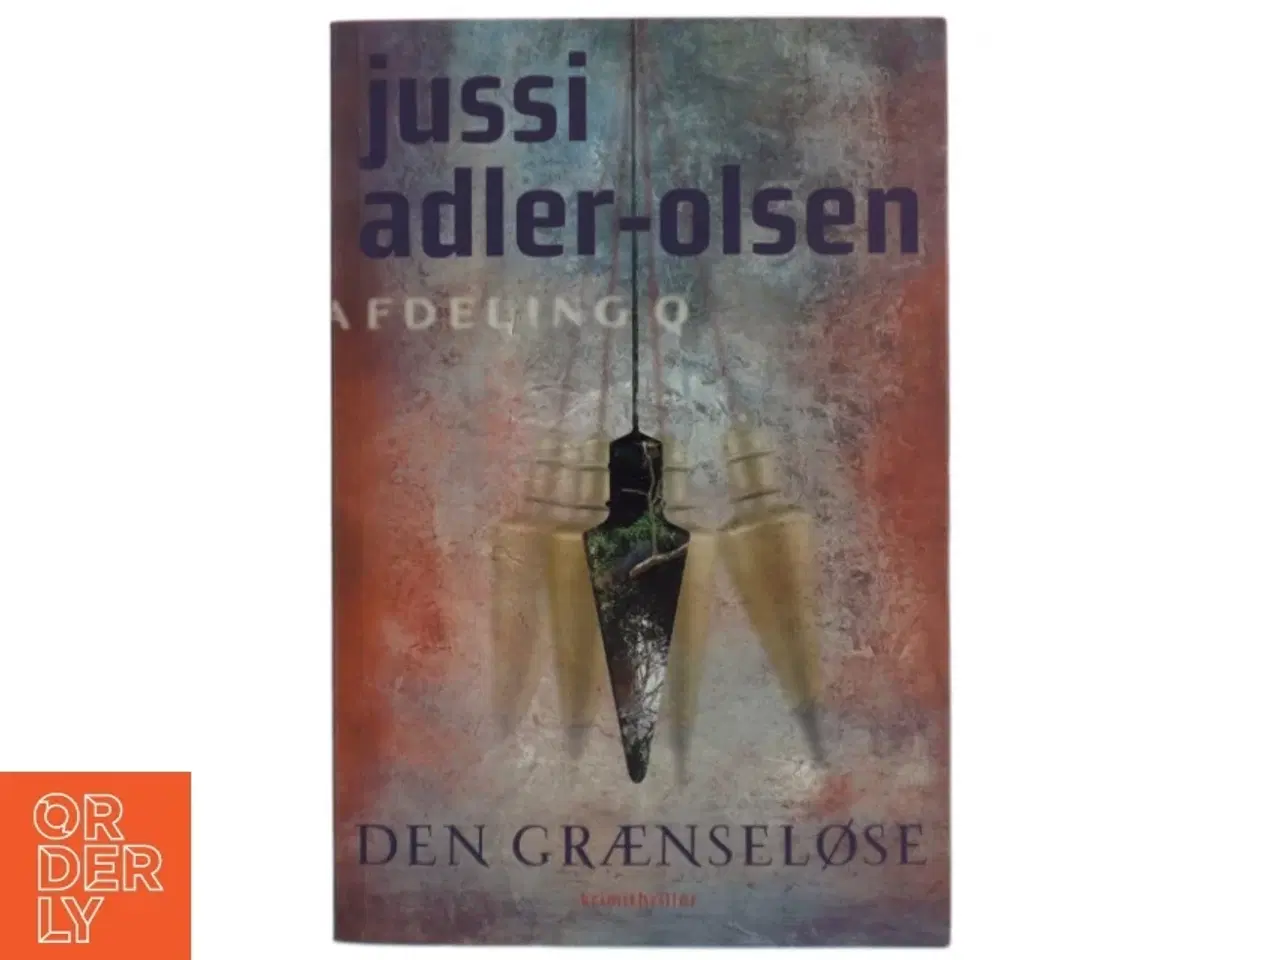 Billede 1 - Den grænseløse af Jussi Adler-Olsen (Bog)